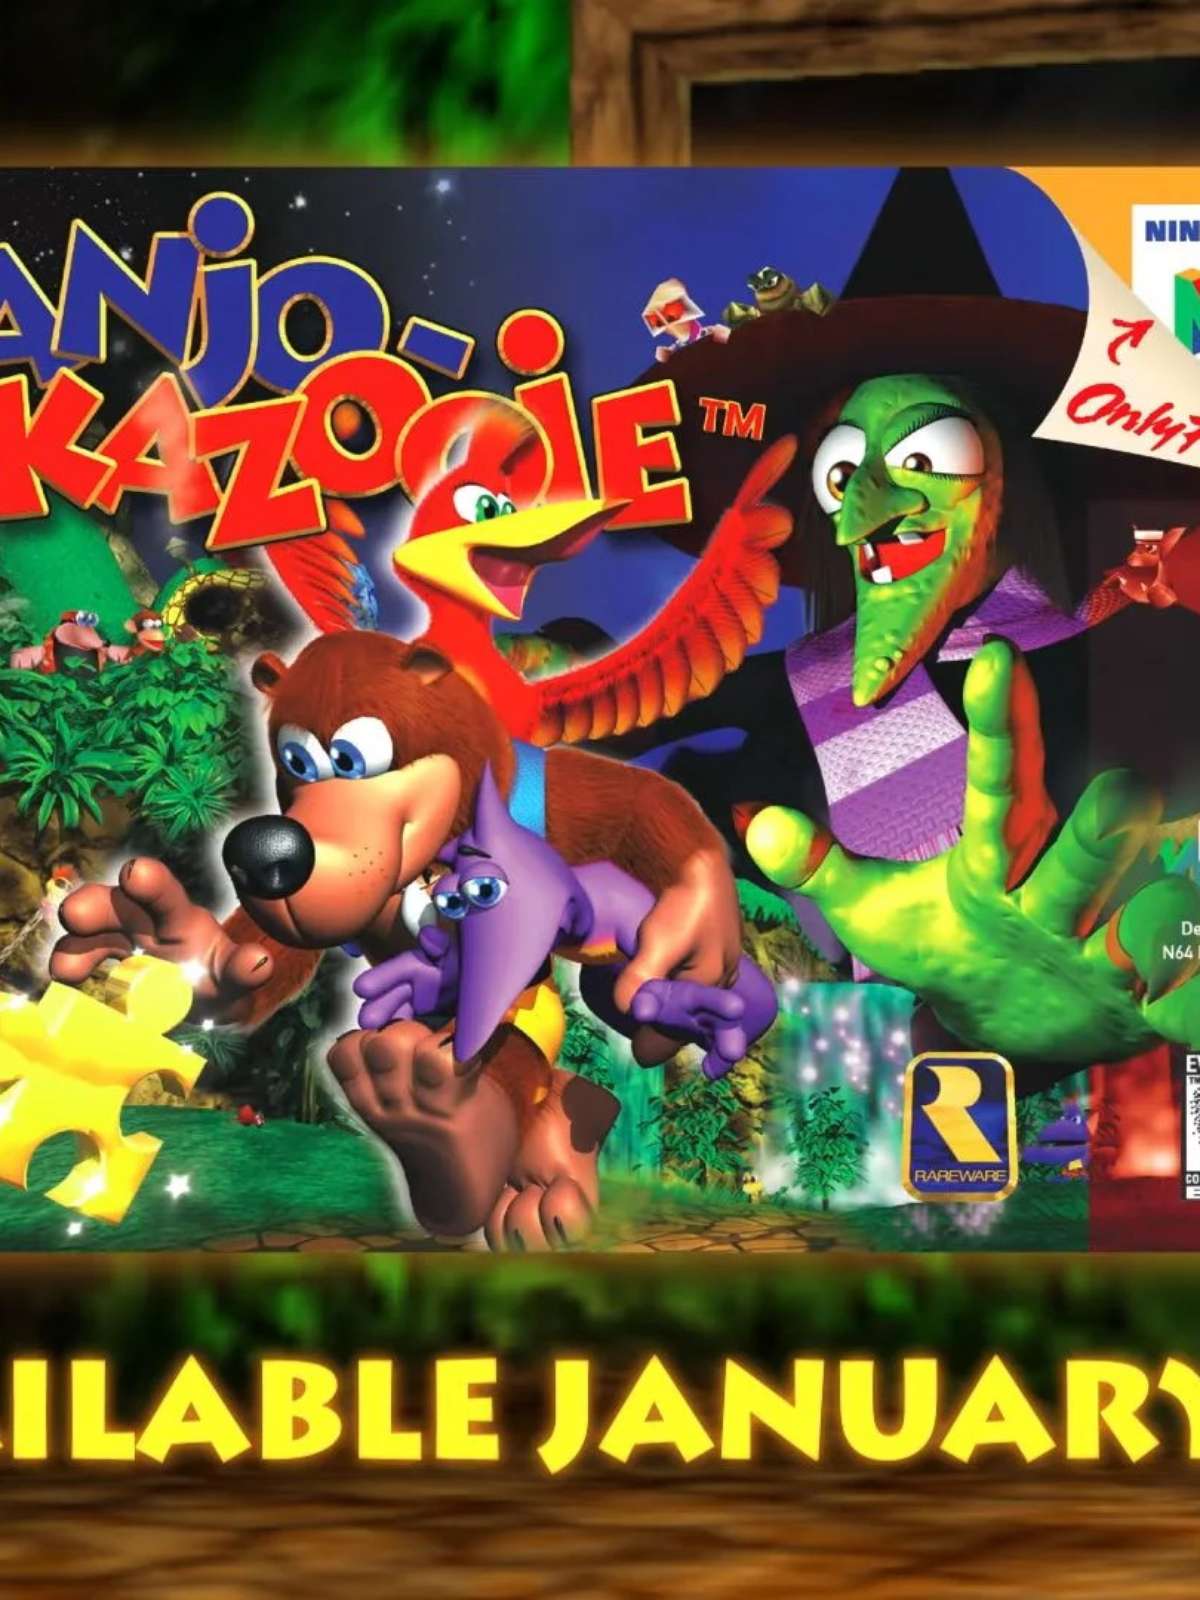 PO.B.R.E - Traduções - Nintendo 64 Banjo-Kazooie (Brazilian